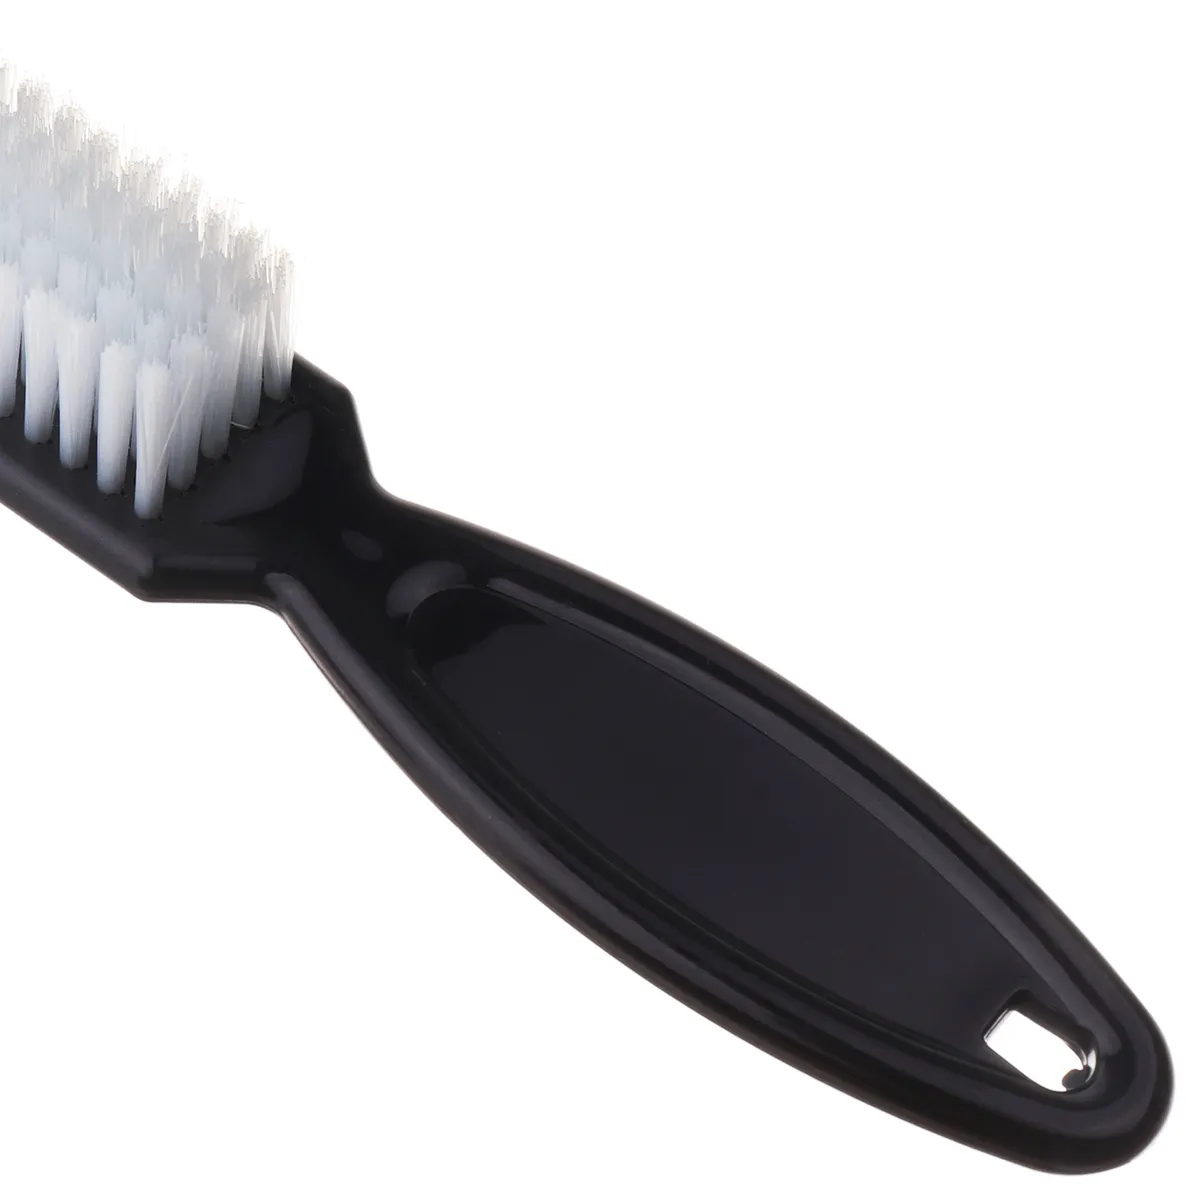 5 adet plastik sap kuaförlük yumuşak saç temizleme fırçası berber boyun tozu kırık saçlar tarak saç şekillendirme araçları